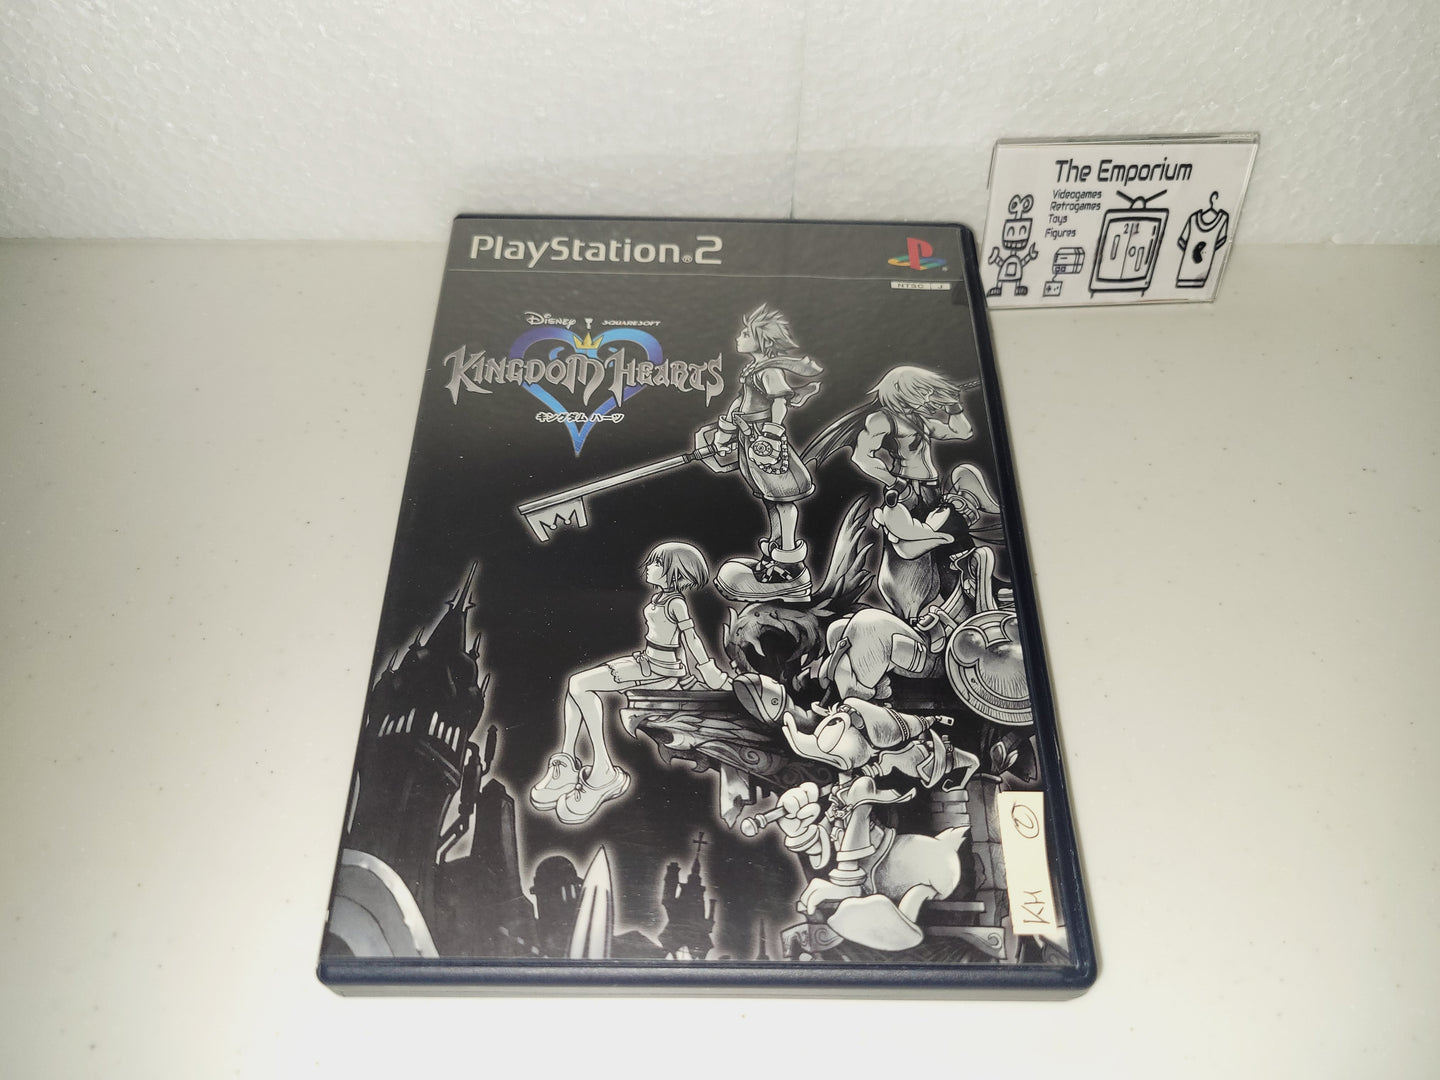 Kingdom Hearts - Sony playstation 2